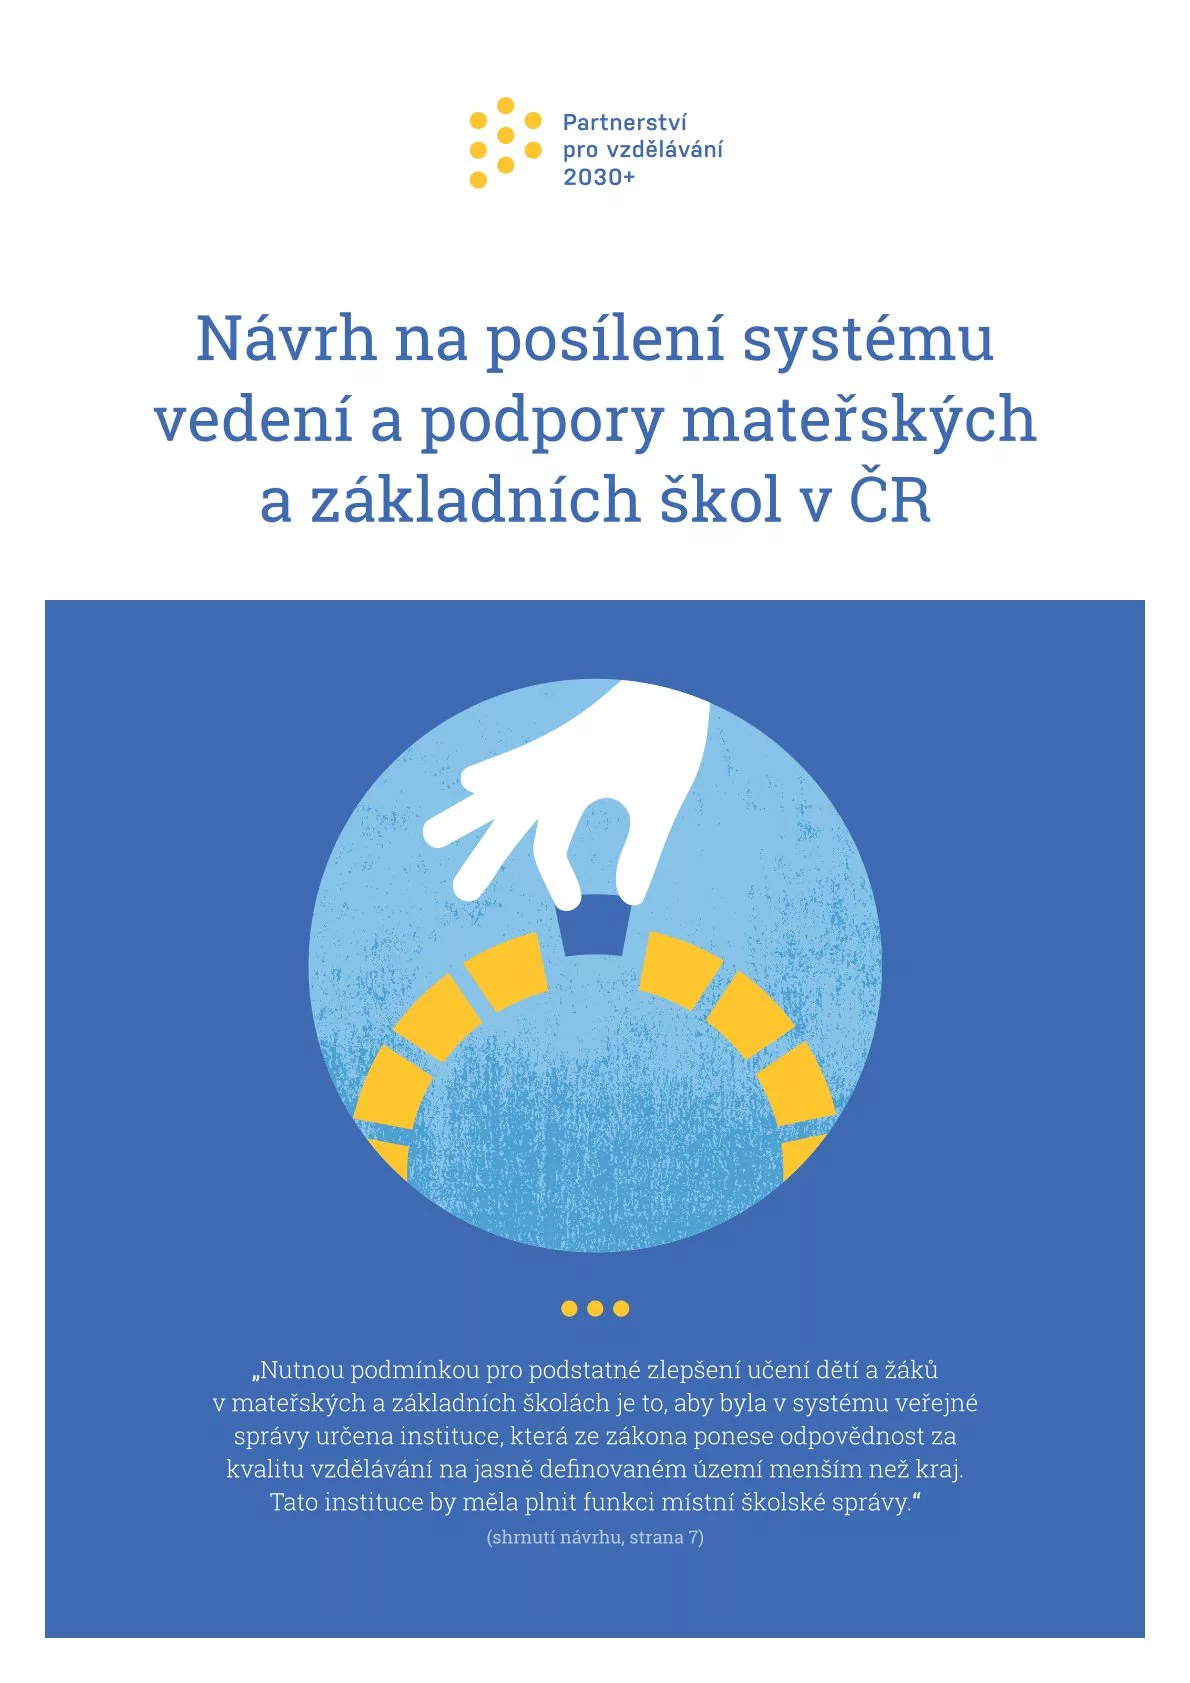 Návrh na posílení systému vedení a podpory mateřských a základních škol v ČR